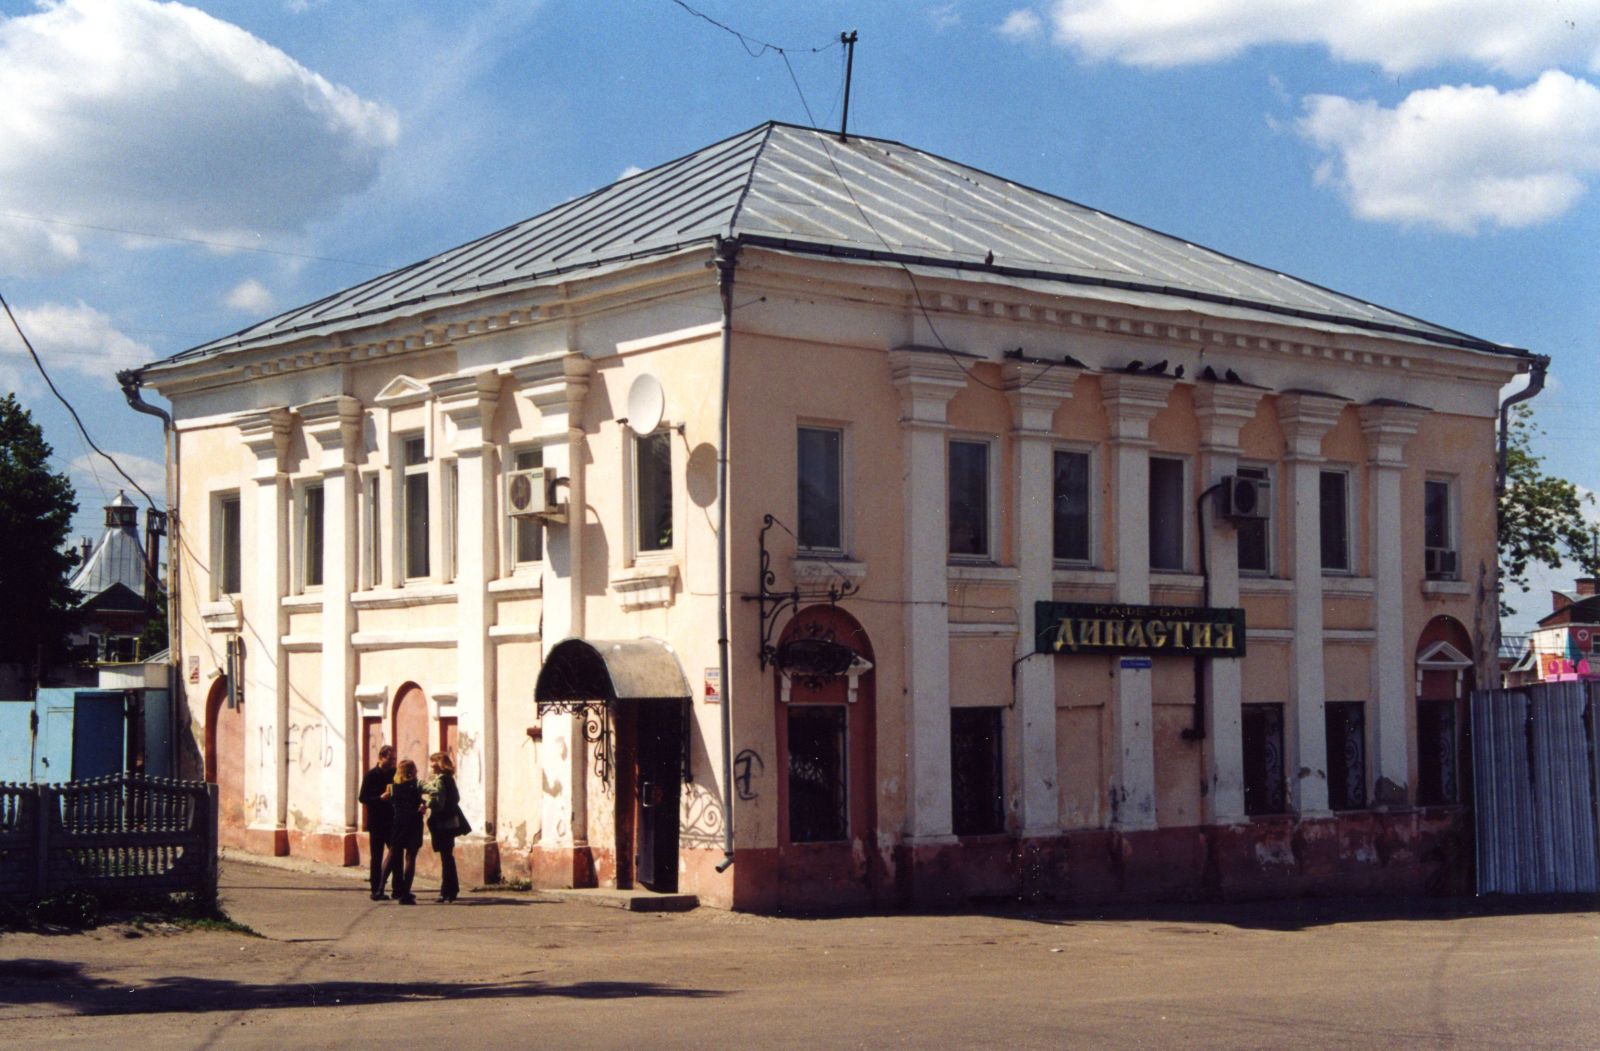 Общий вид дома Белозеровых в начале ХХI в. Фото А.В. Лисицыной, 2003 г.